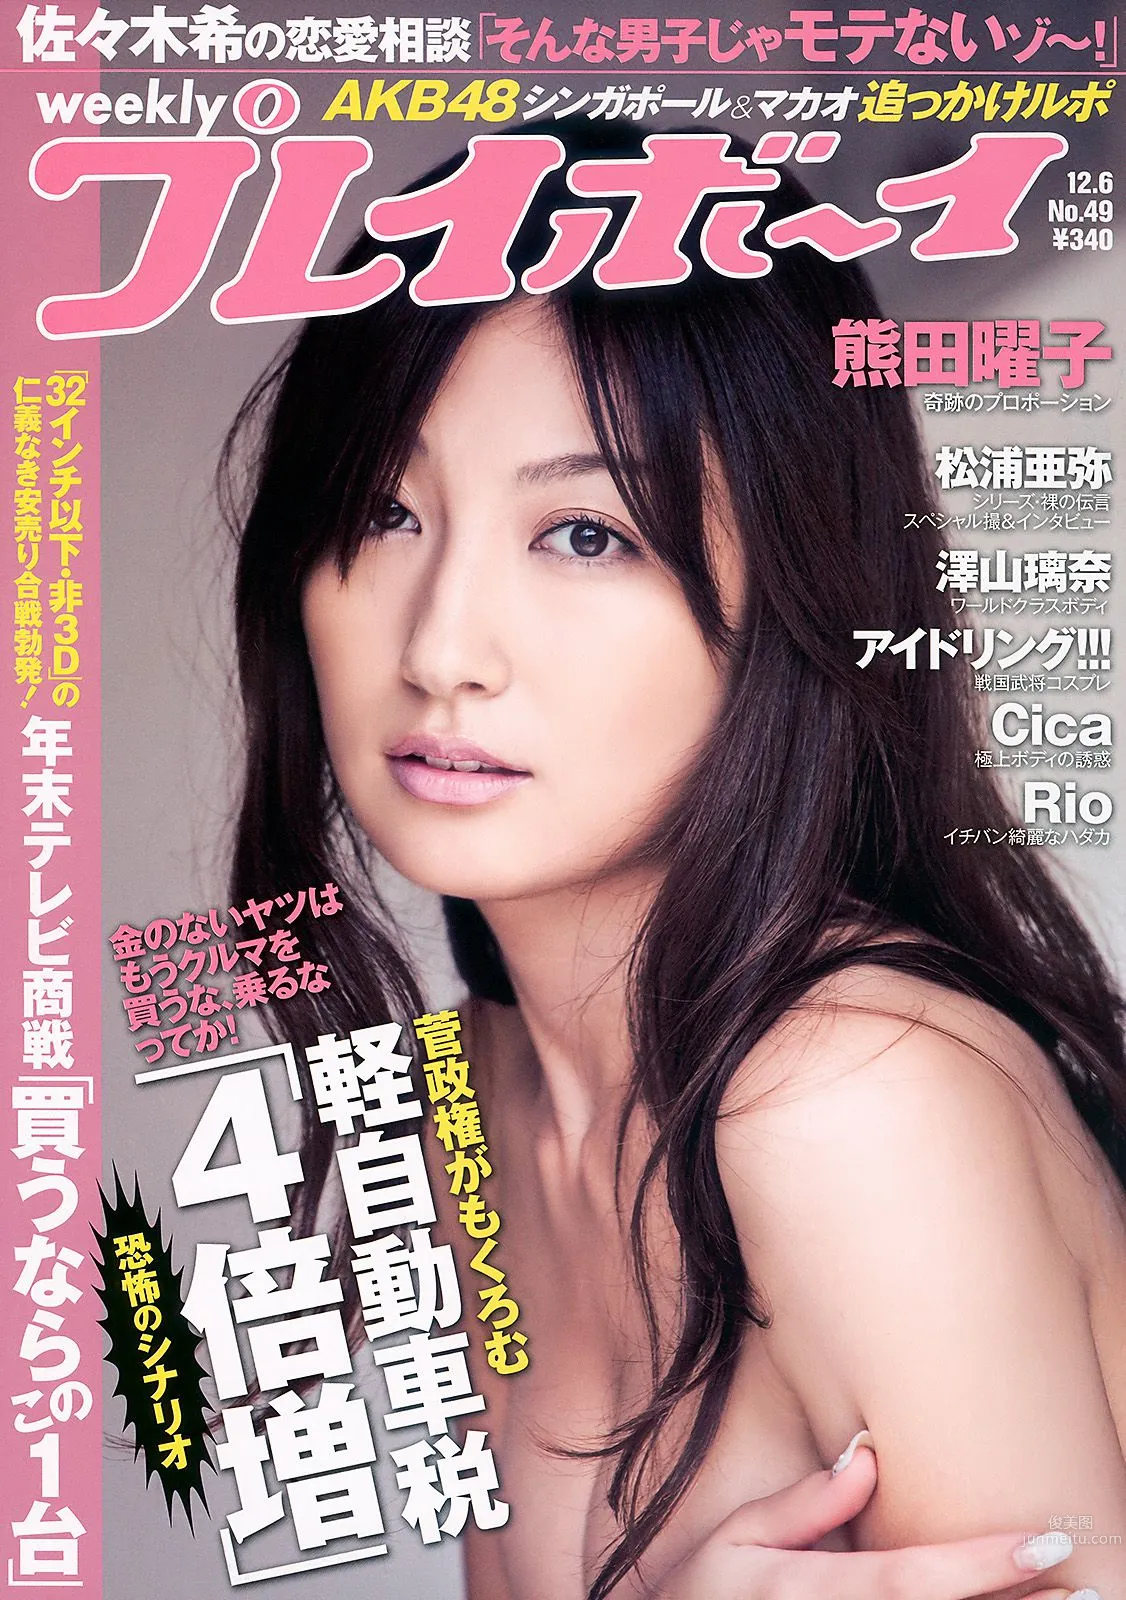 熊田曜子 澤山璃奈 松浦亜彌 アイドリング 周韦彤 [Weekly Playboy] 2010年No.49 写真杂志1